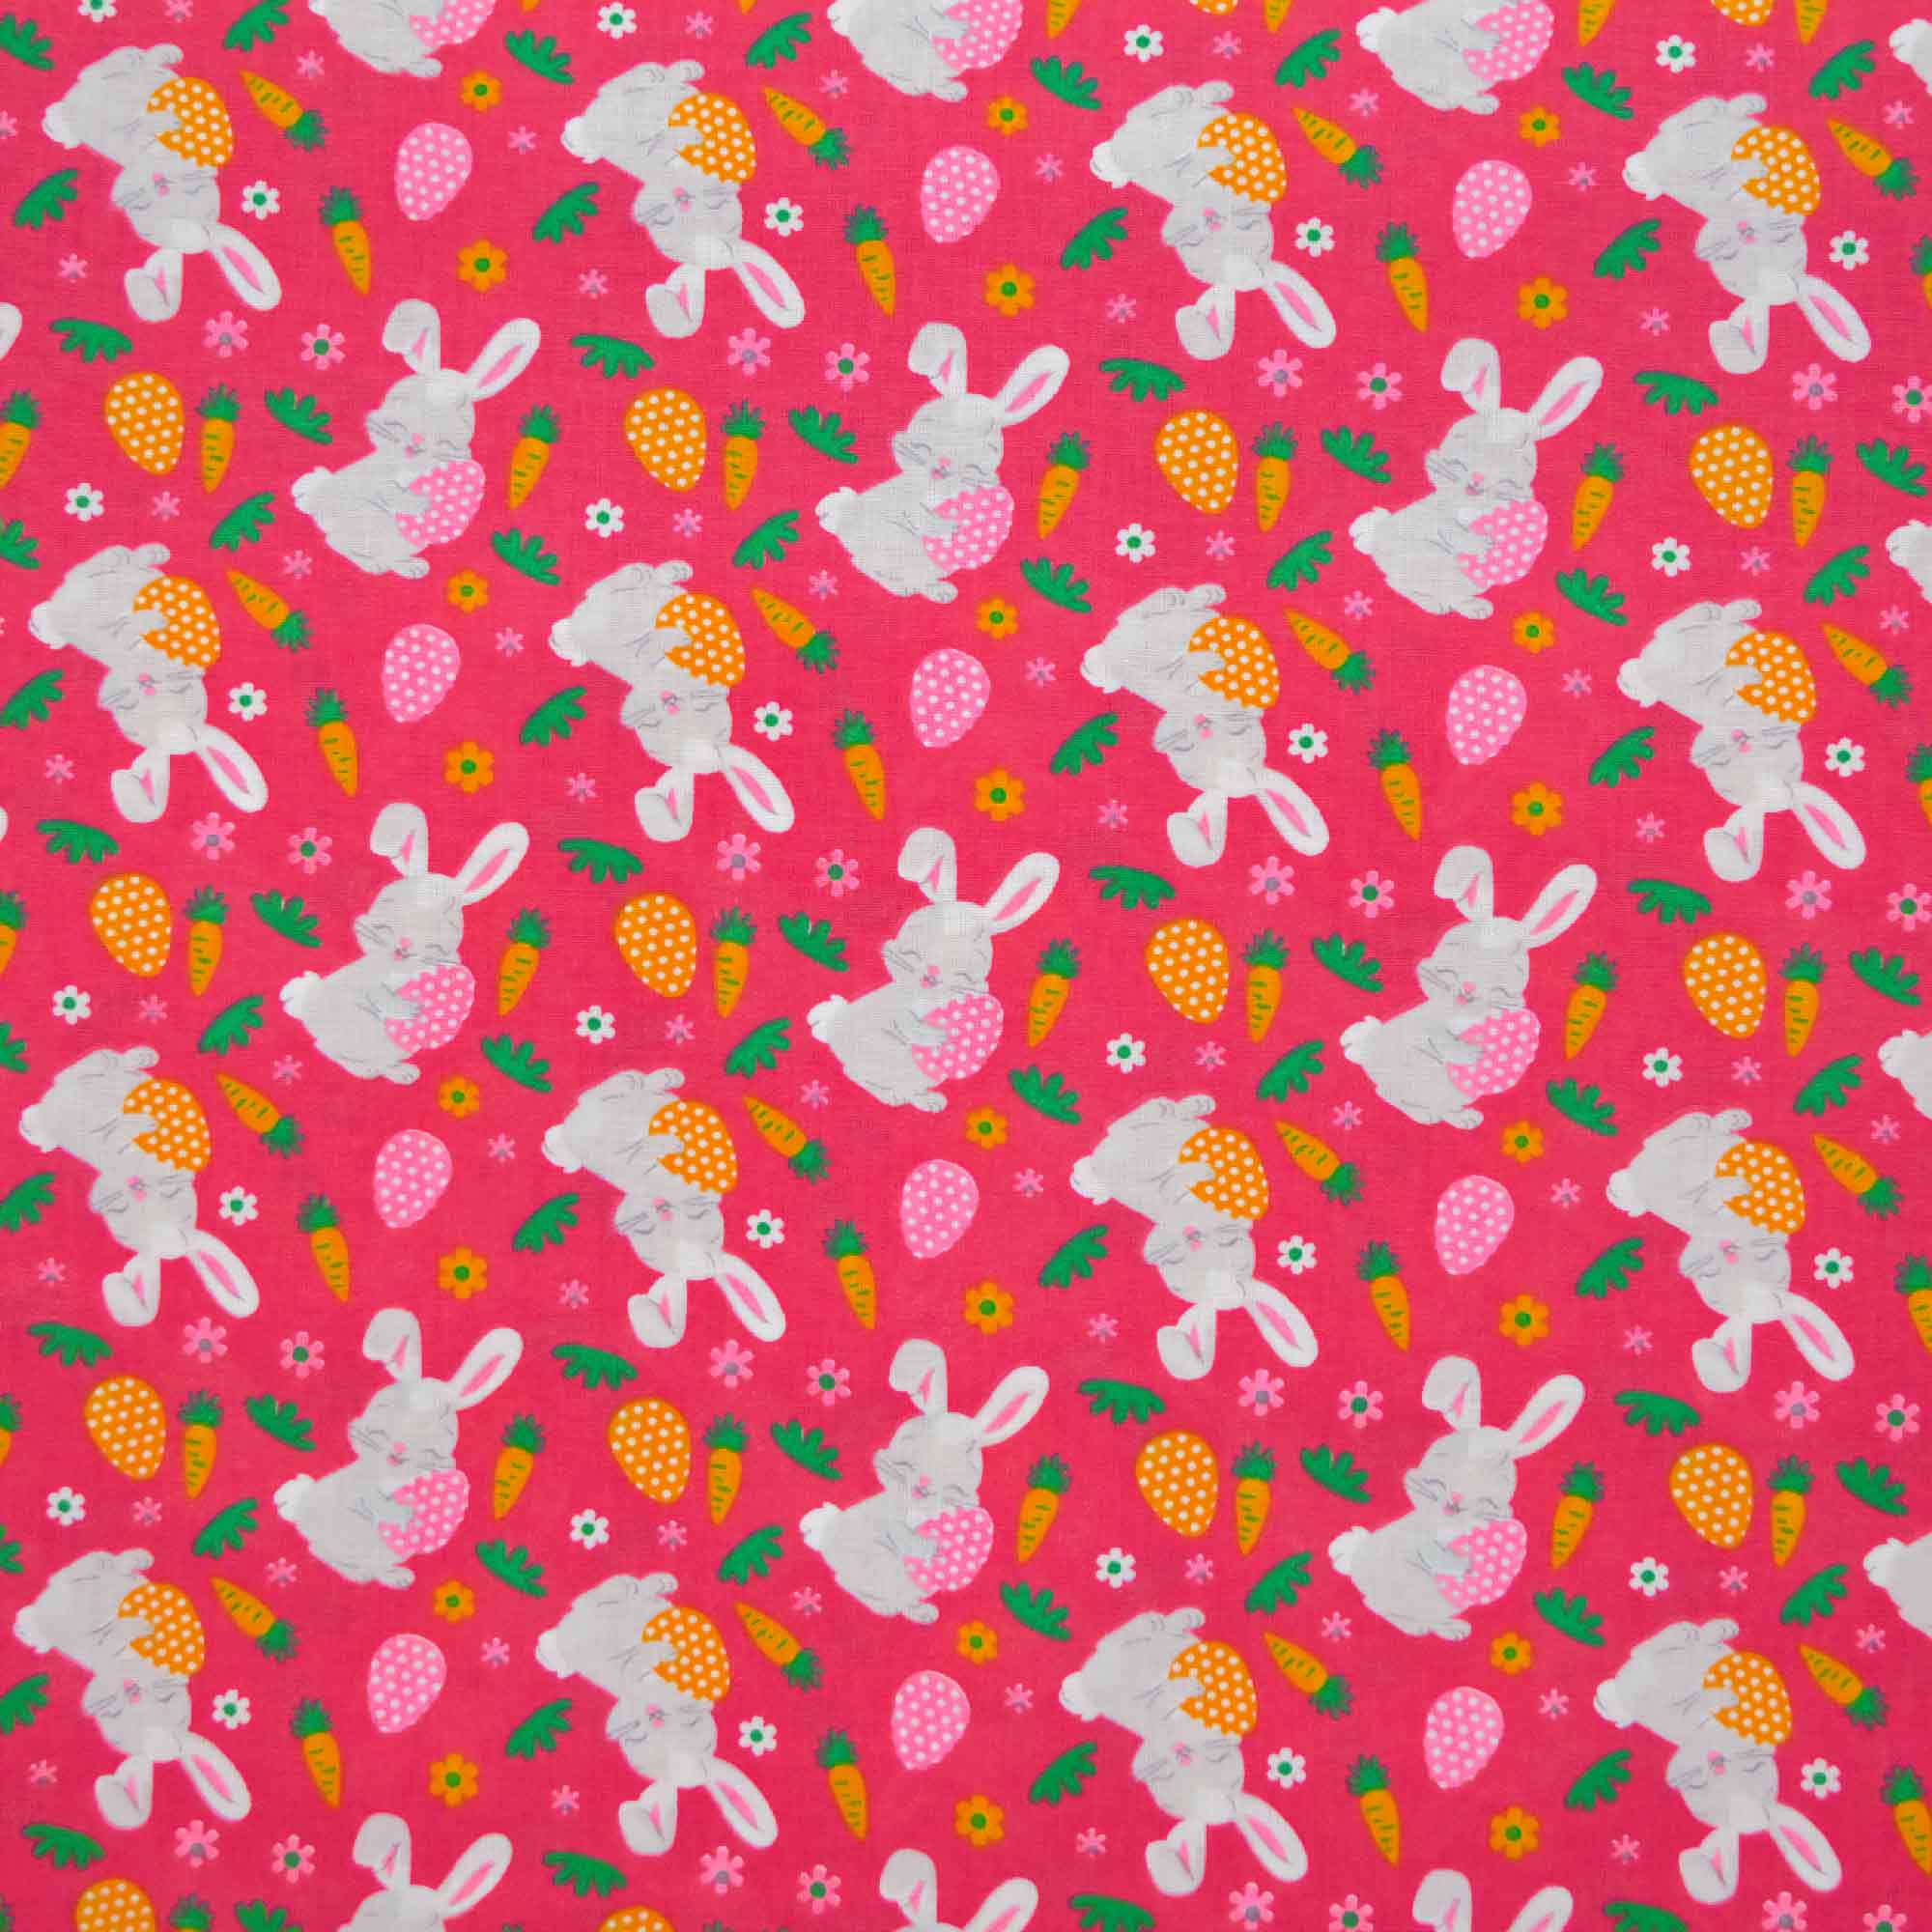 tecido-tricoline-pascoa-coelhos-com-cenoura-fundo-pink-10187